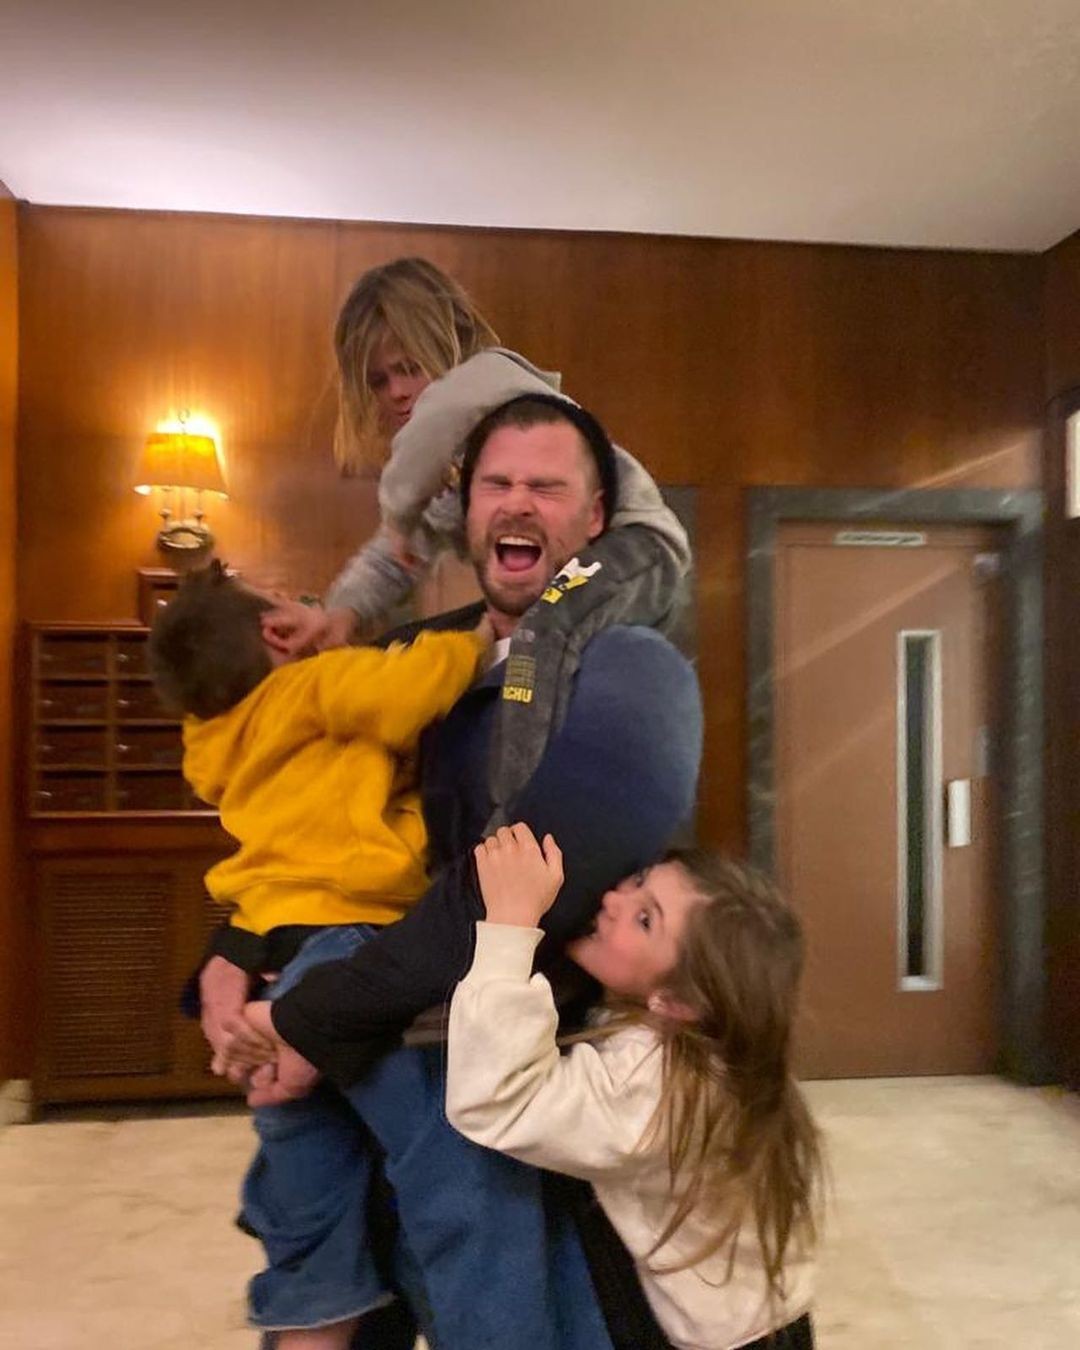 Chris Hemsworth posta foto com filho e vira motivo de piada